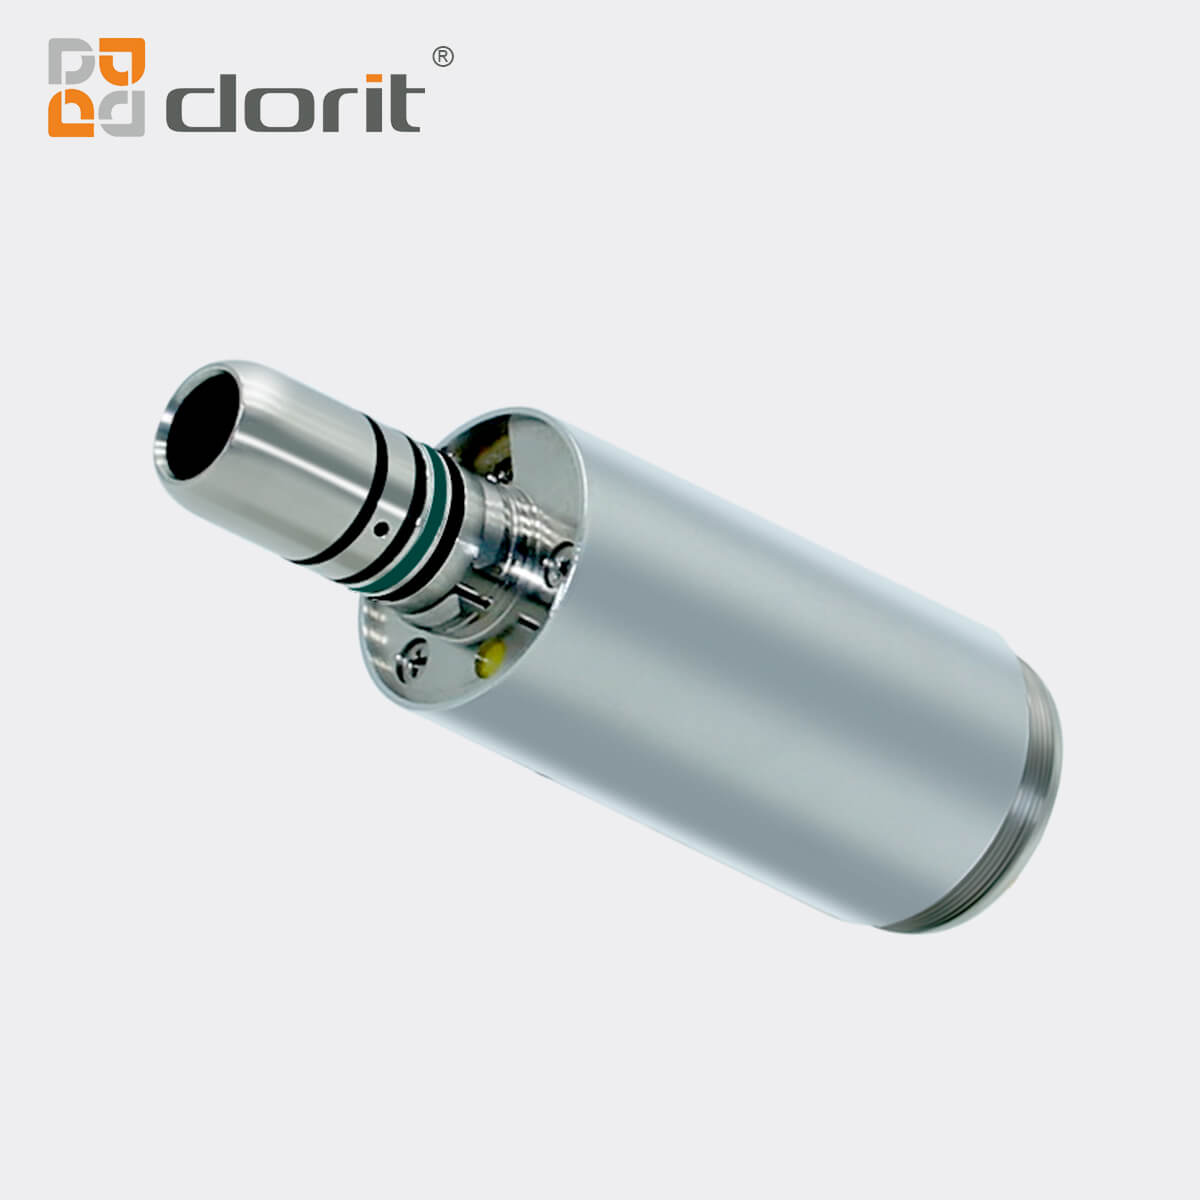 Dorit DR-ME5 dental electrical motor with led 